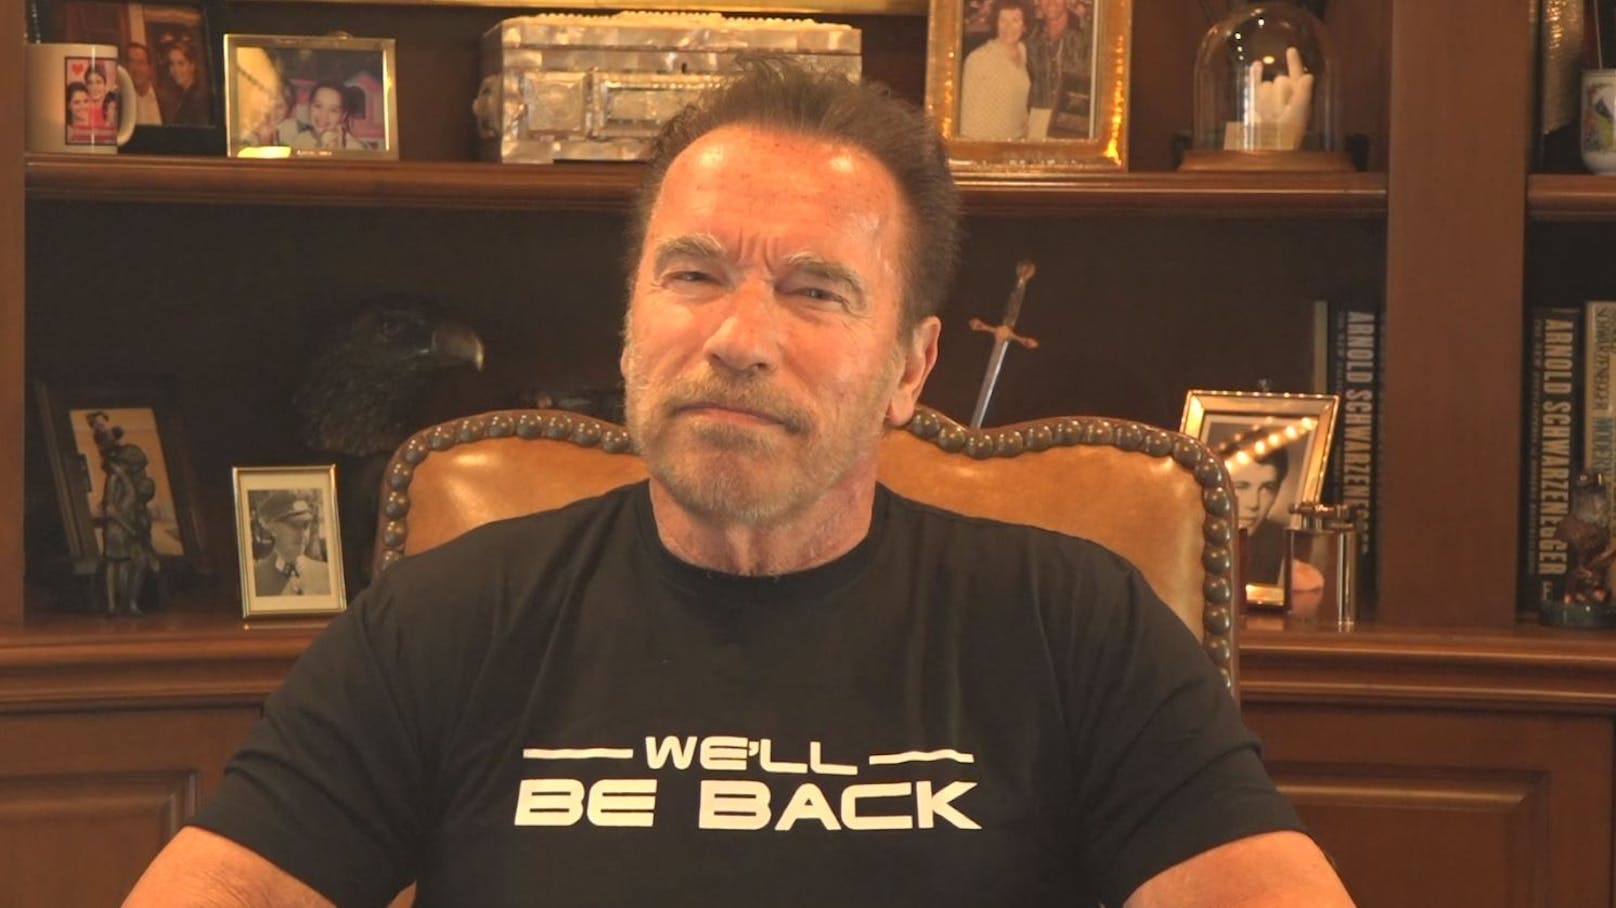 <strong>PLATZ 4:</strong> Überraschung! "Terminator" <strong>Arnold Schwarzenegger</strong> schafft es mit 842 getöteten Filmgegnern "nur" auf den vierten Platz des Rankings.